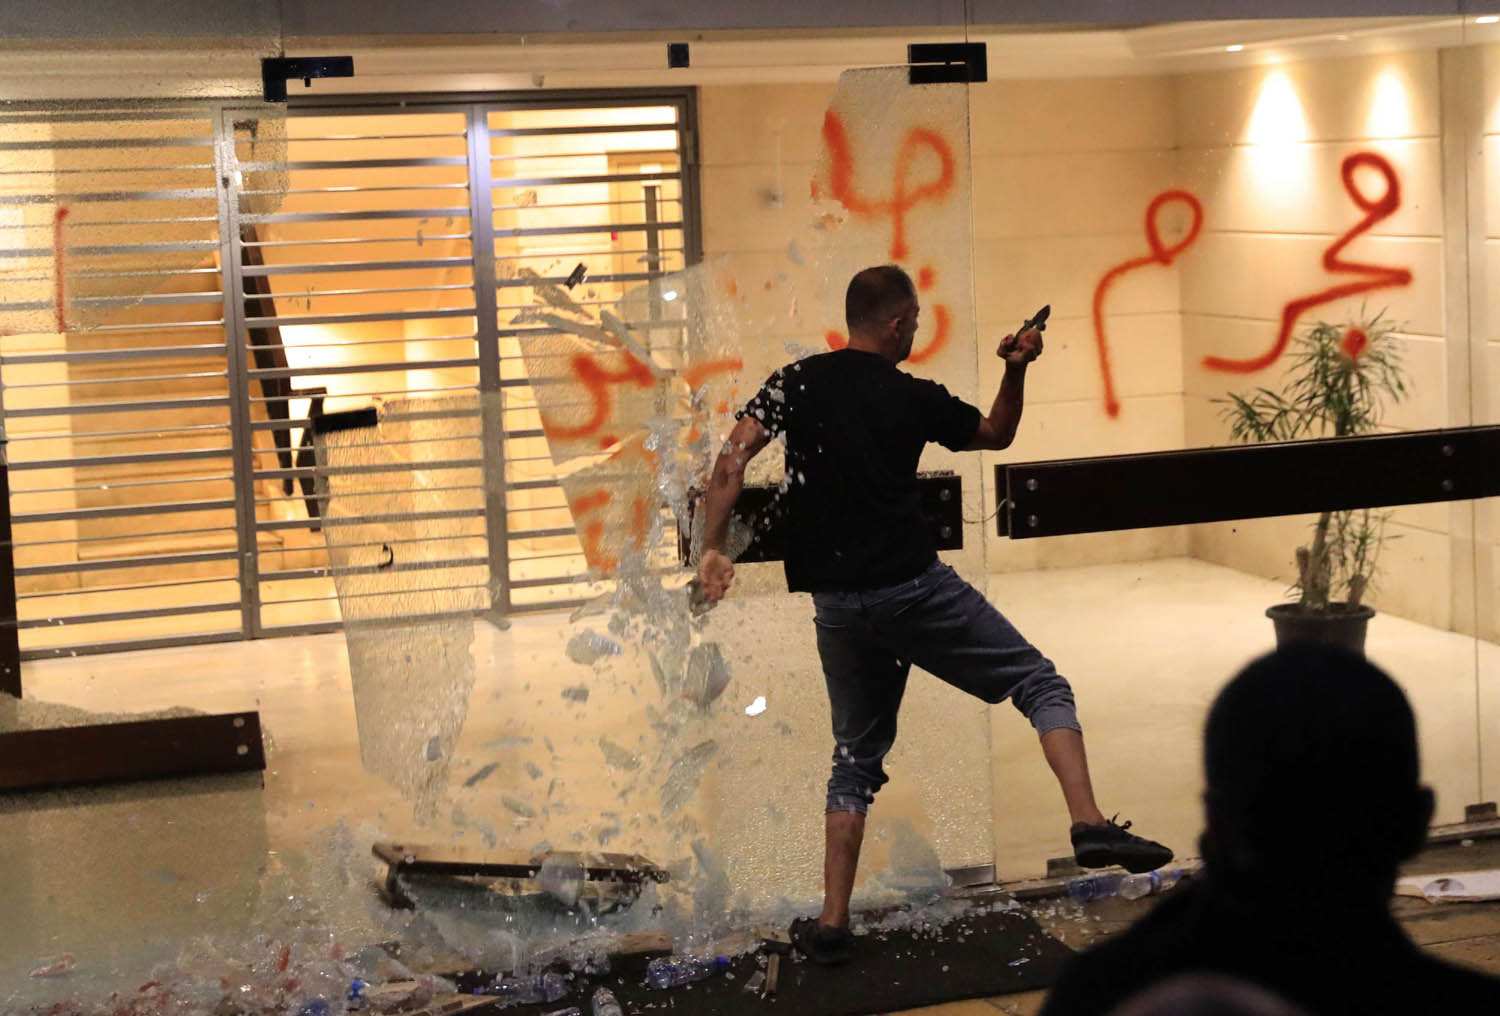 محتج لبناني يهاجم مدخل مبنى يقيم فيه وزير الداخلية